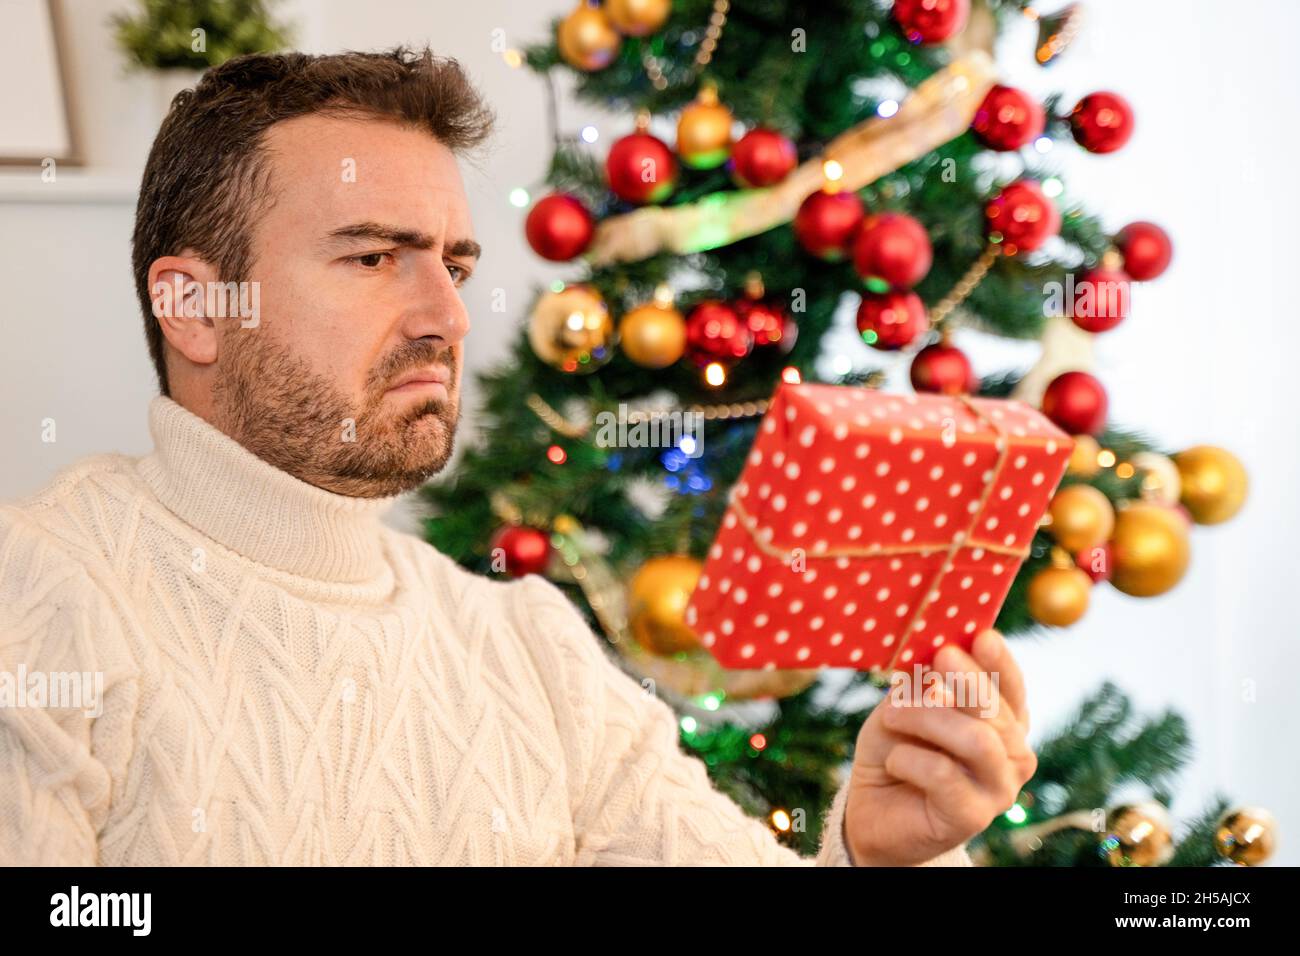 Mann, der sich für ein schlechtes Weihnachtsgeschenk enttäuscht fühlte Stockfoto